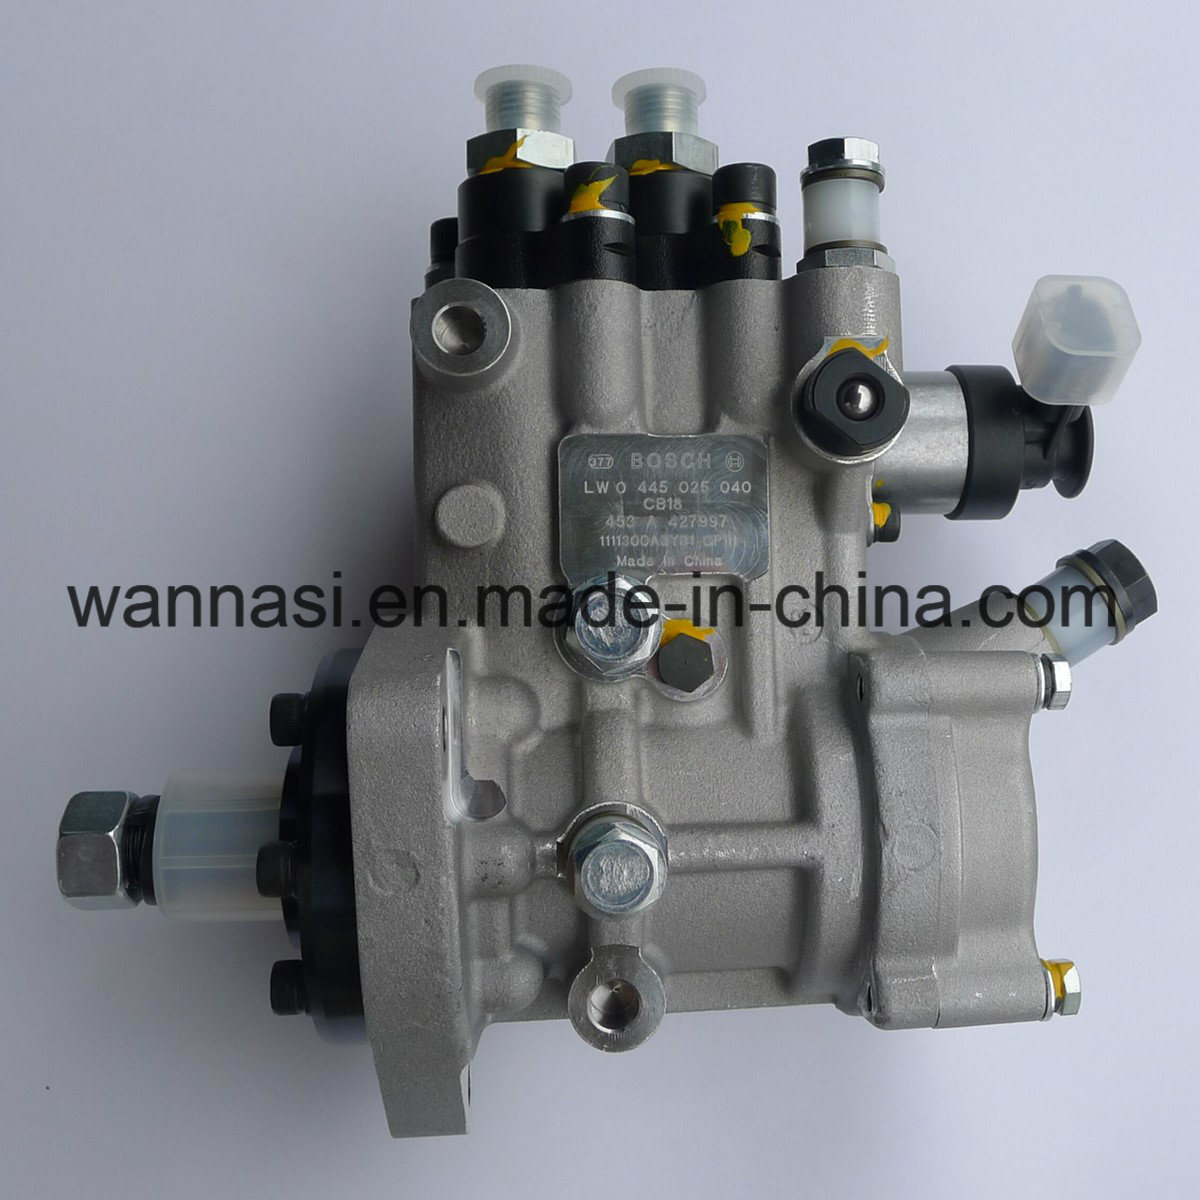 Original Bosch Diesel CB18 Fuel Injection Pump 0445025040